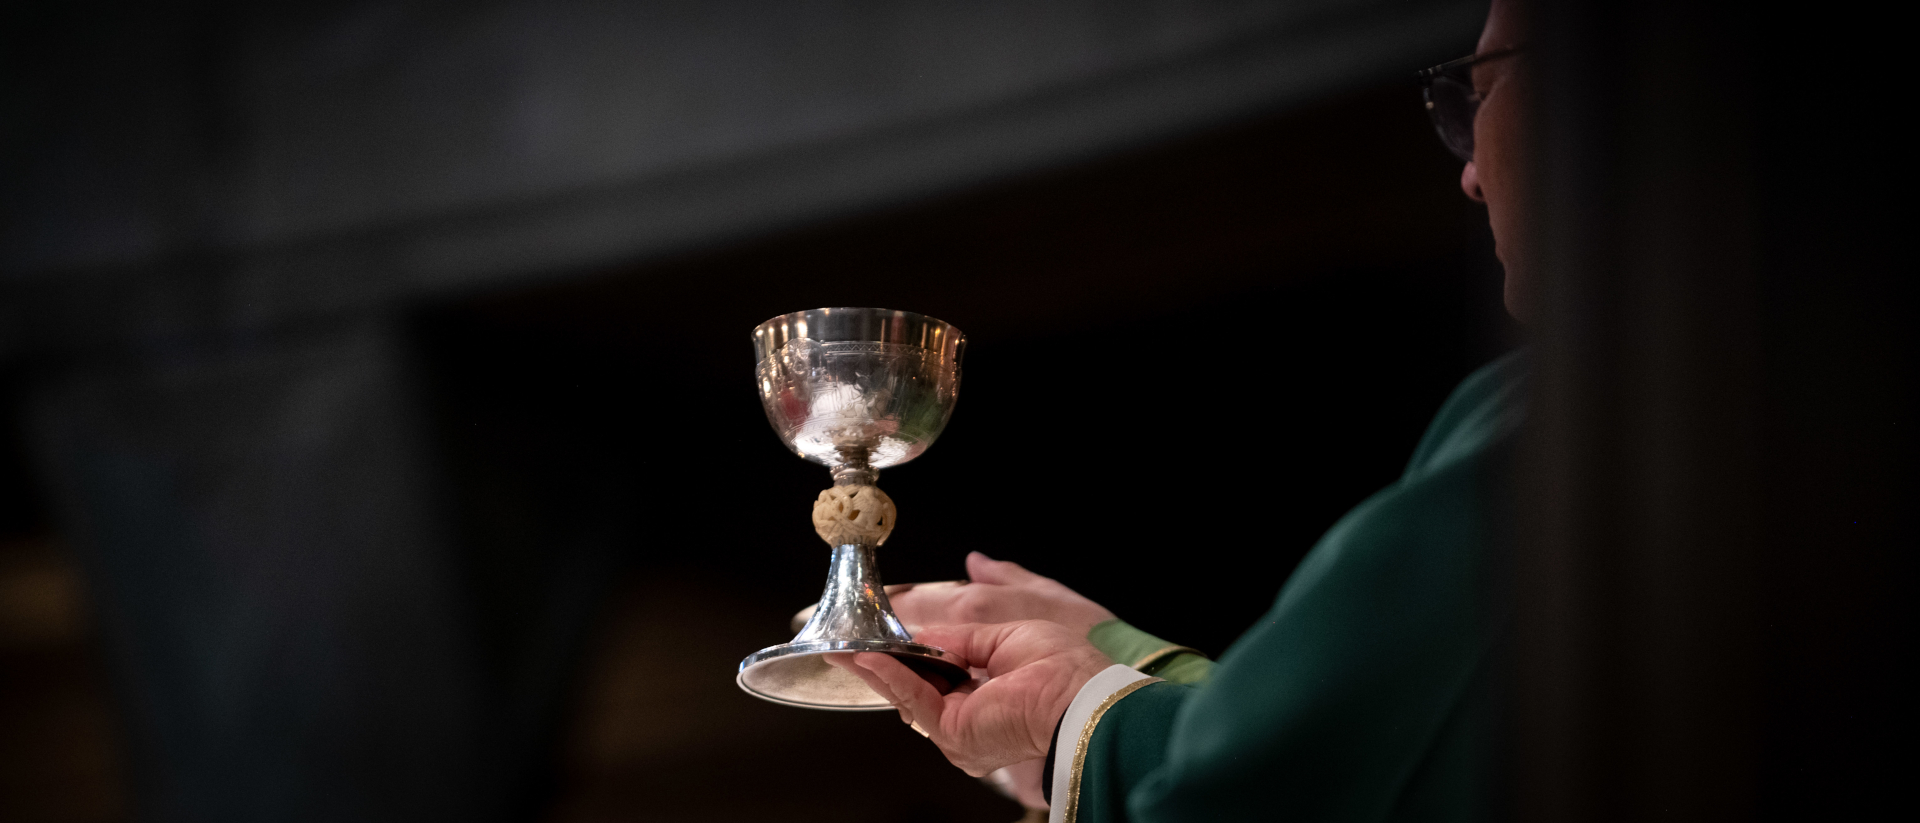 Eucharistie-Feier


PHOTO LAURENT CROTTET 
PROTEGE PAR UN COPYRIGHT - TOUTE REPRODUCTION INTERDITE SANS ACCORD ECRIT